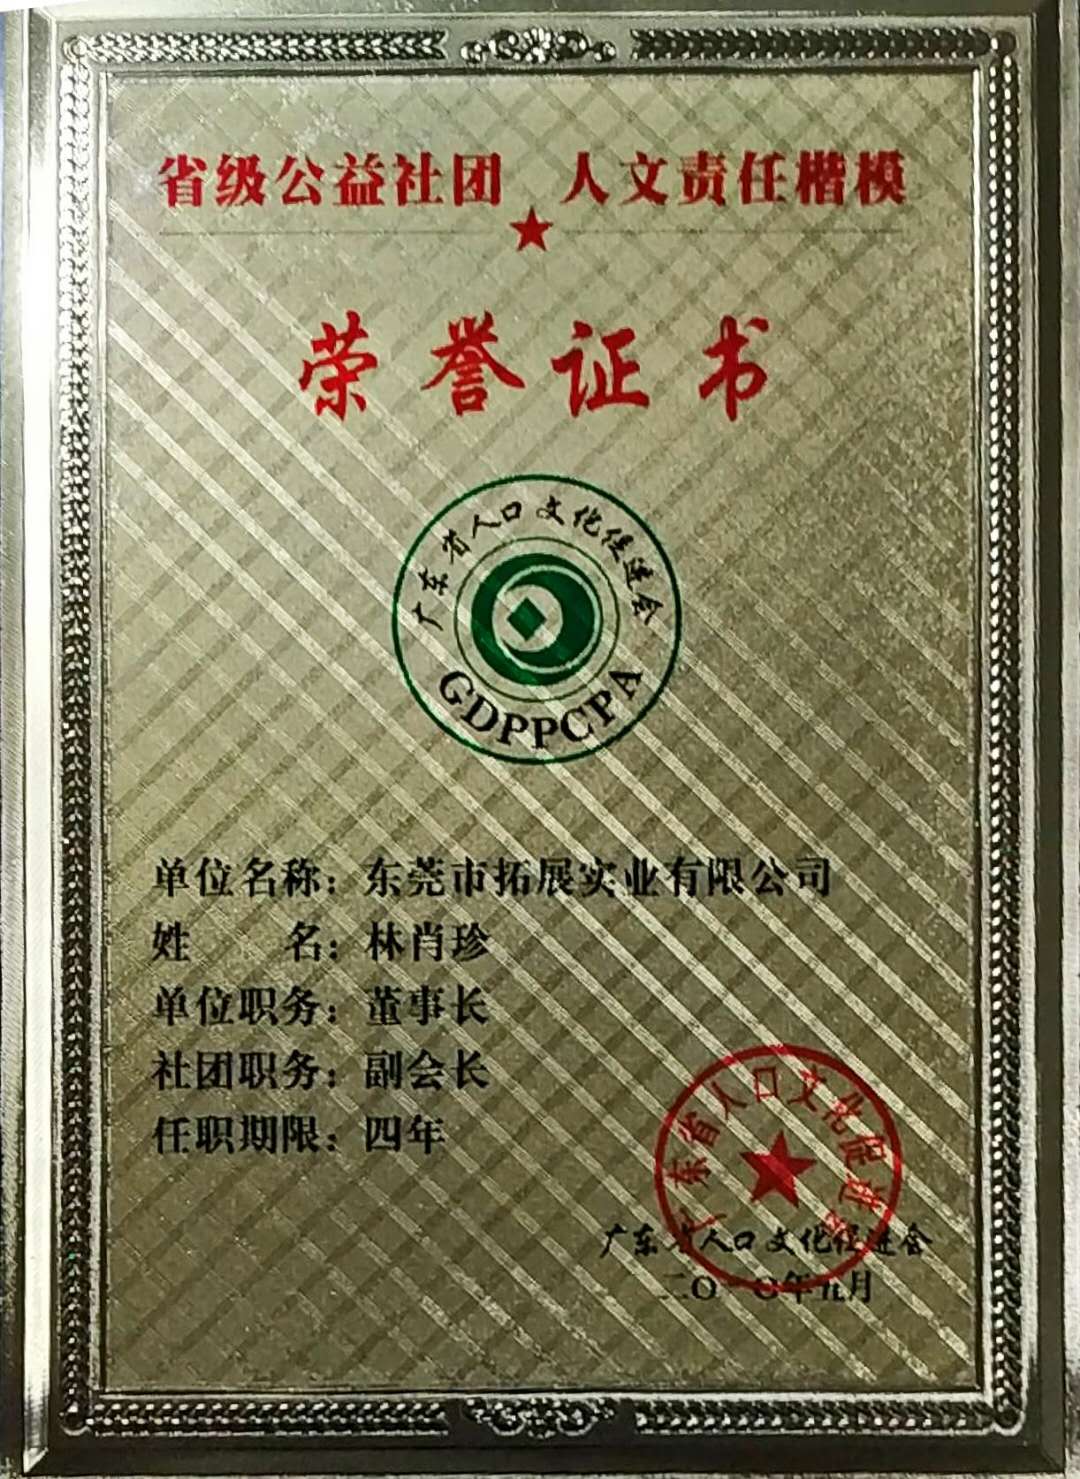 Certificado de honor público